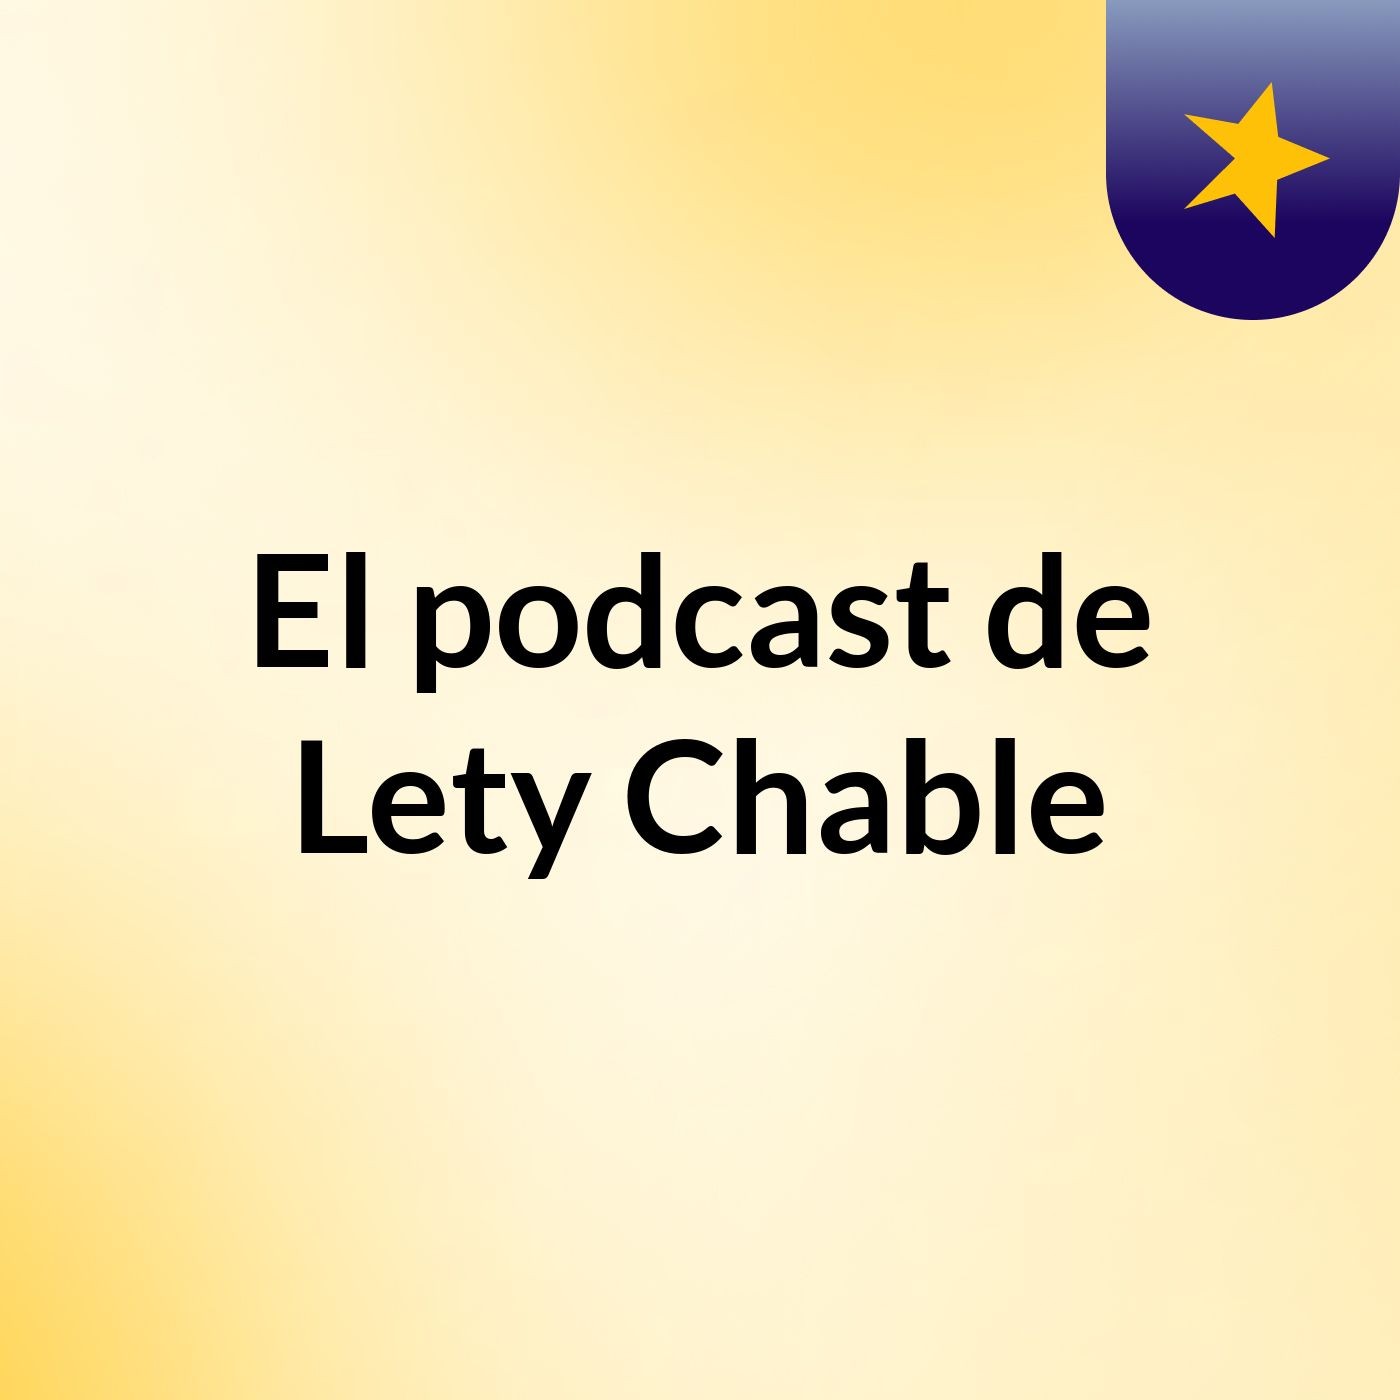 1 De.samiel o 12 - El podcast de Lety Chable